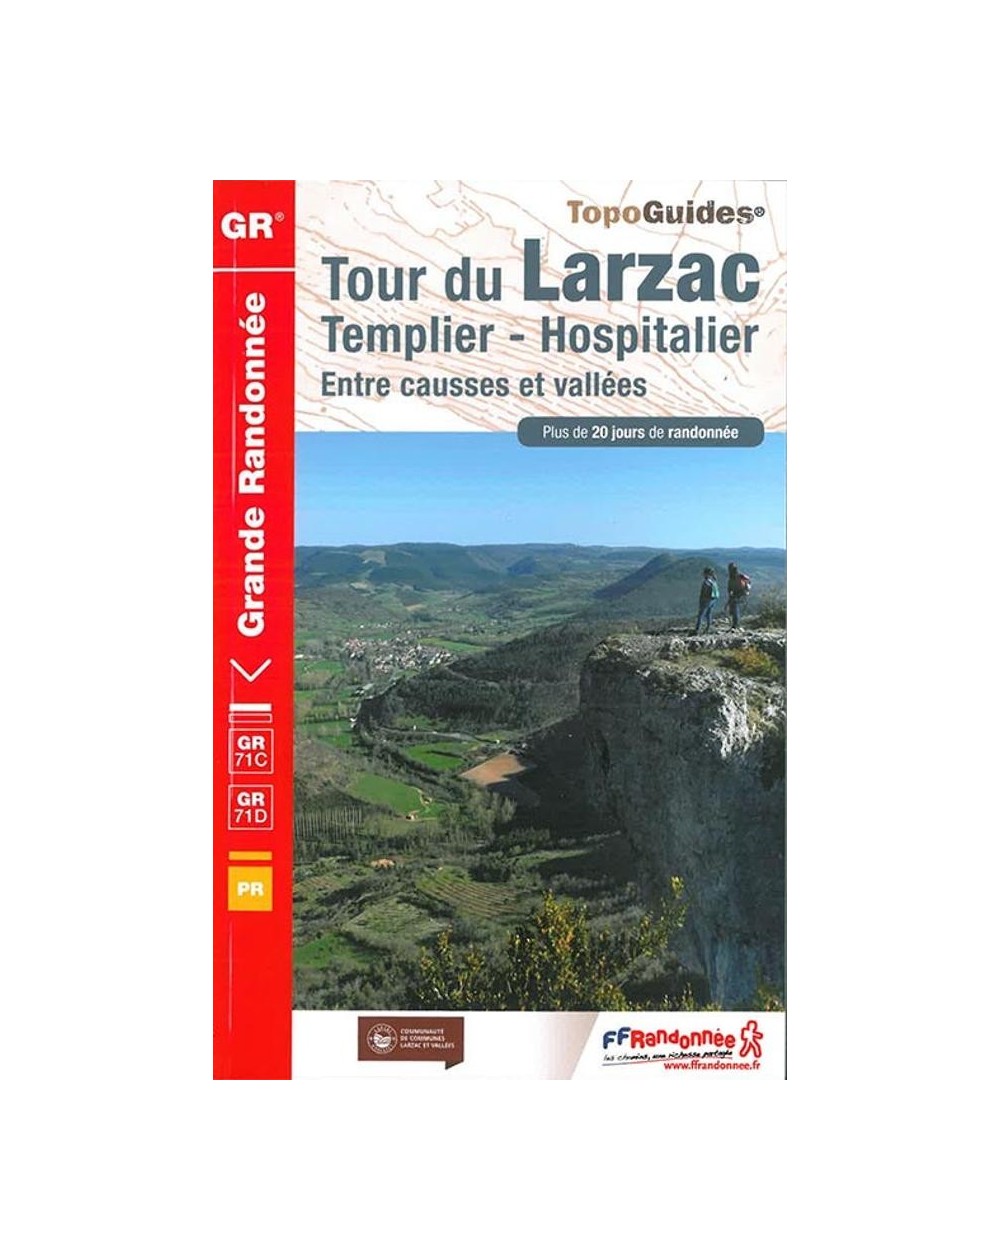 GR710 - Tour du larzac - Templier  et Hospitalier | Topoguide 